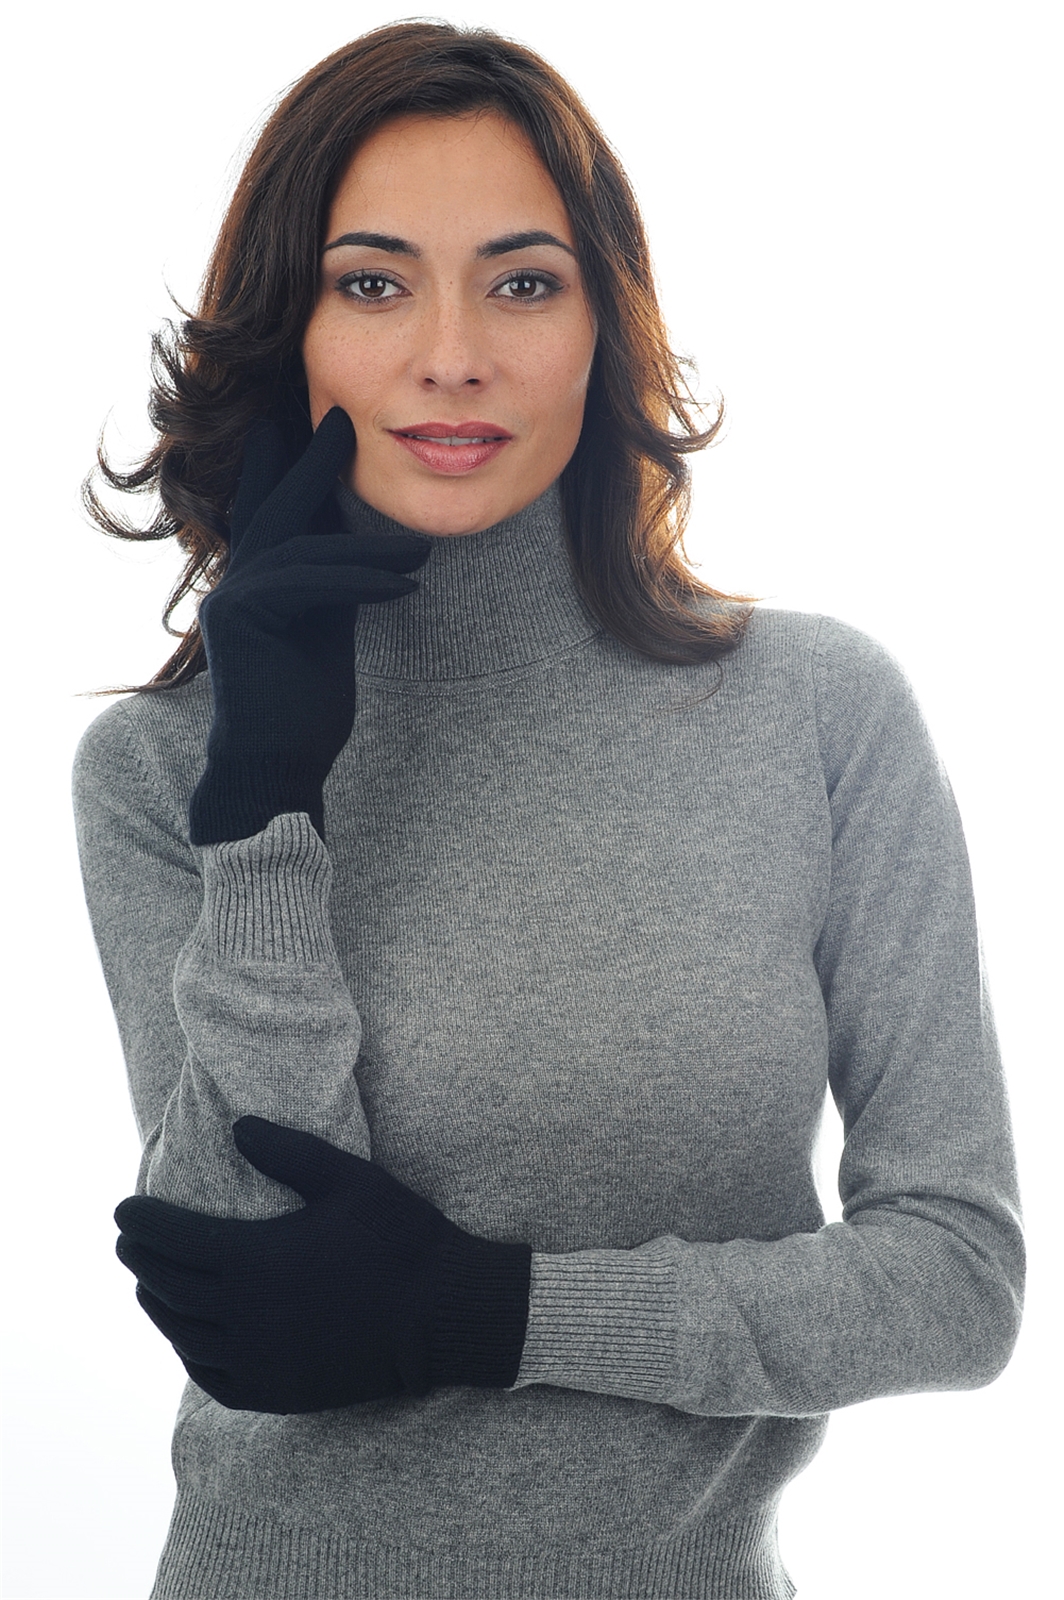 Cashmere accessories gloves manine black 22 x 13 cm